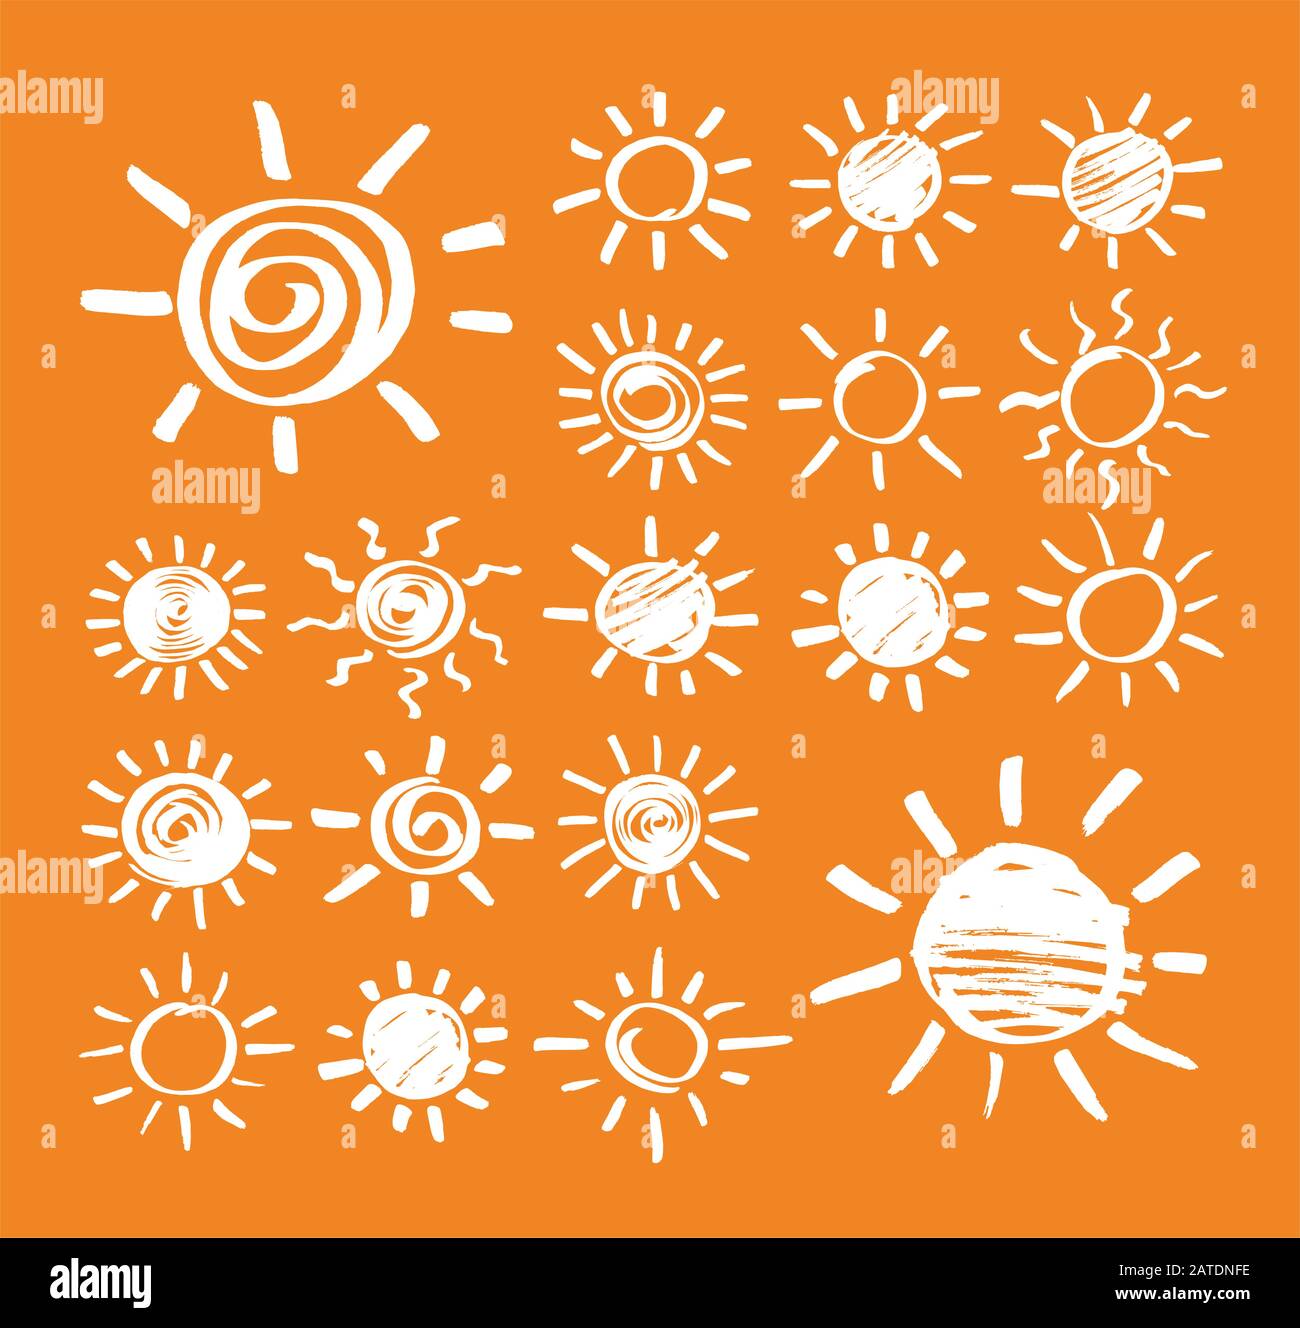 Satz von Vektor-Sonnensymbolen mit der Hand durch einen Marker gezeichnet. Gefühlte, mit Stift gekritzte Sonnenstrahlen isoliert auf orangefarbenem Hintergrund. Skizze EPS8-Abbildung. Stock Vektor